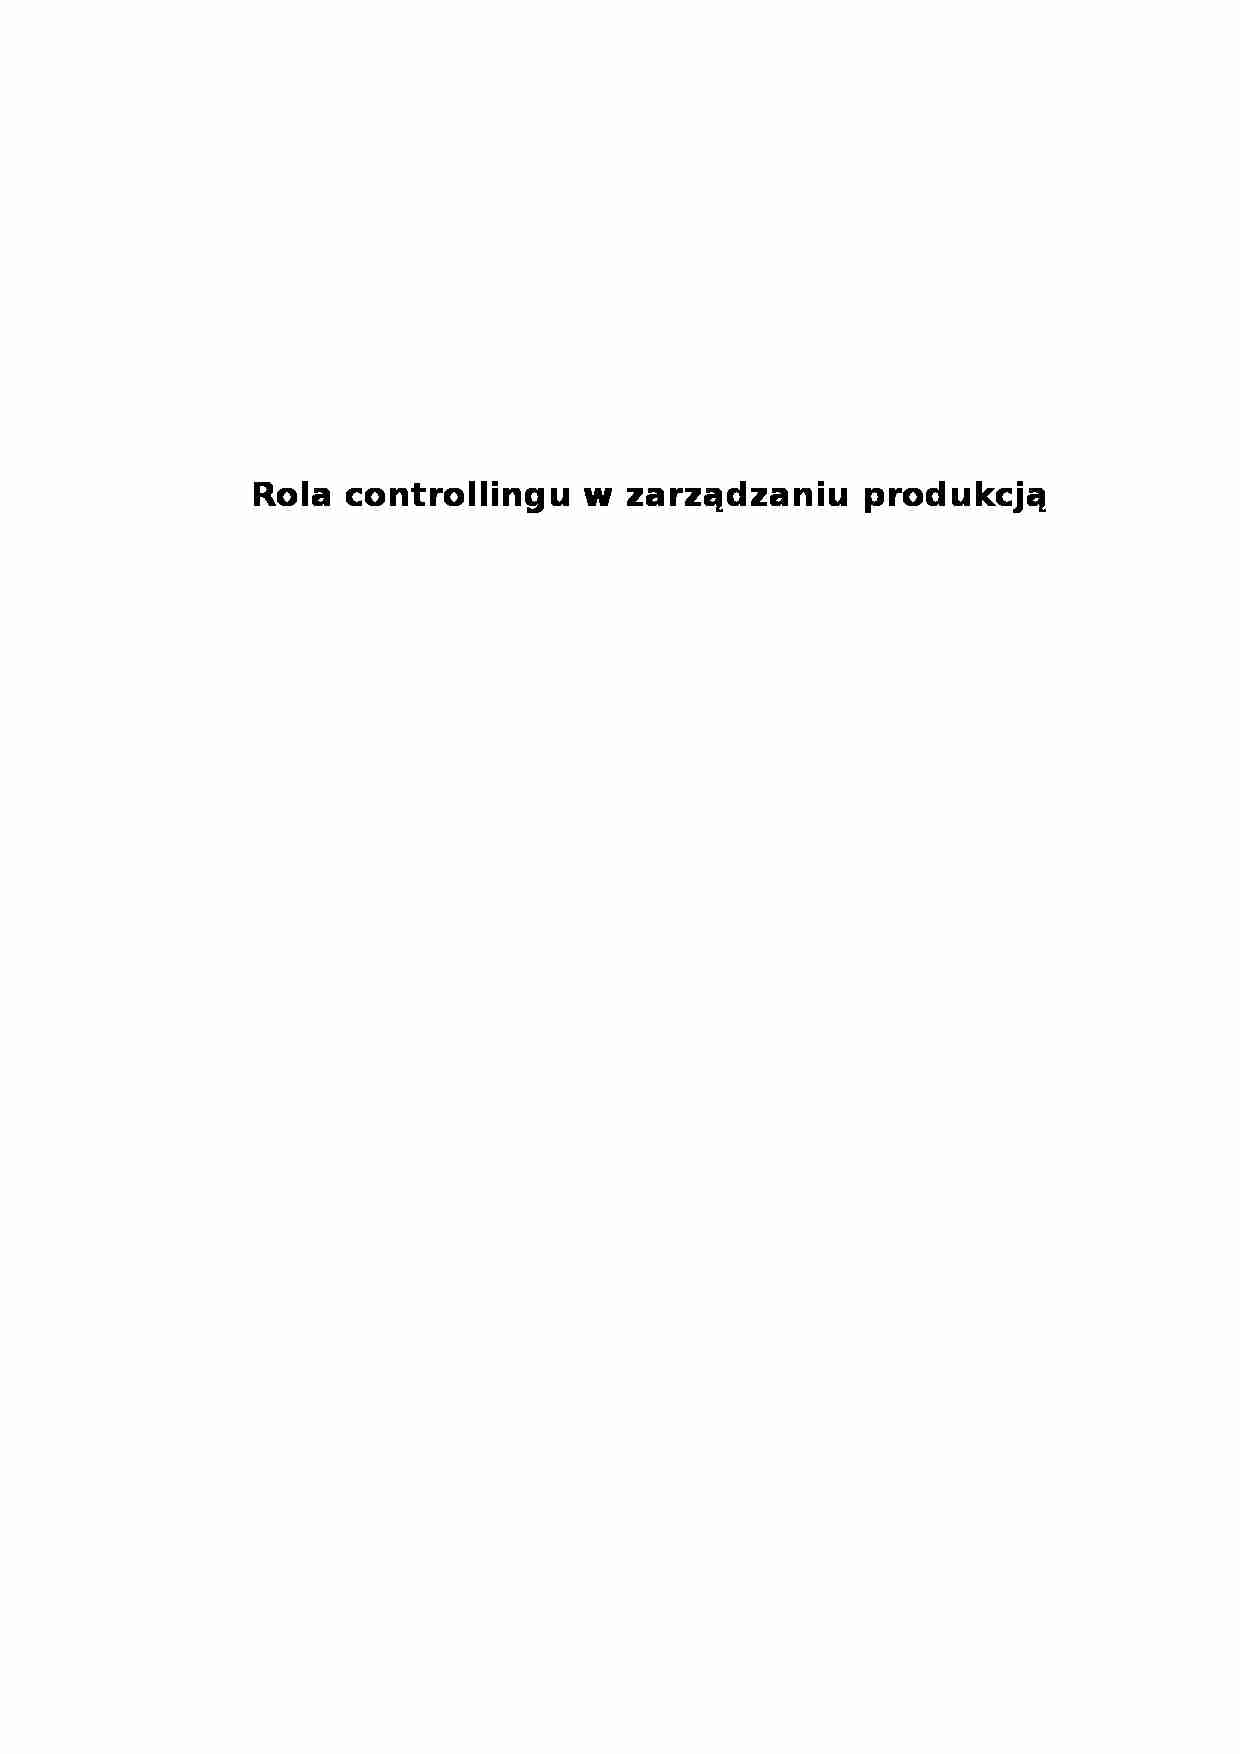 Rola controllingu w zarządzaniu produkcją - strona 1